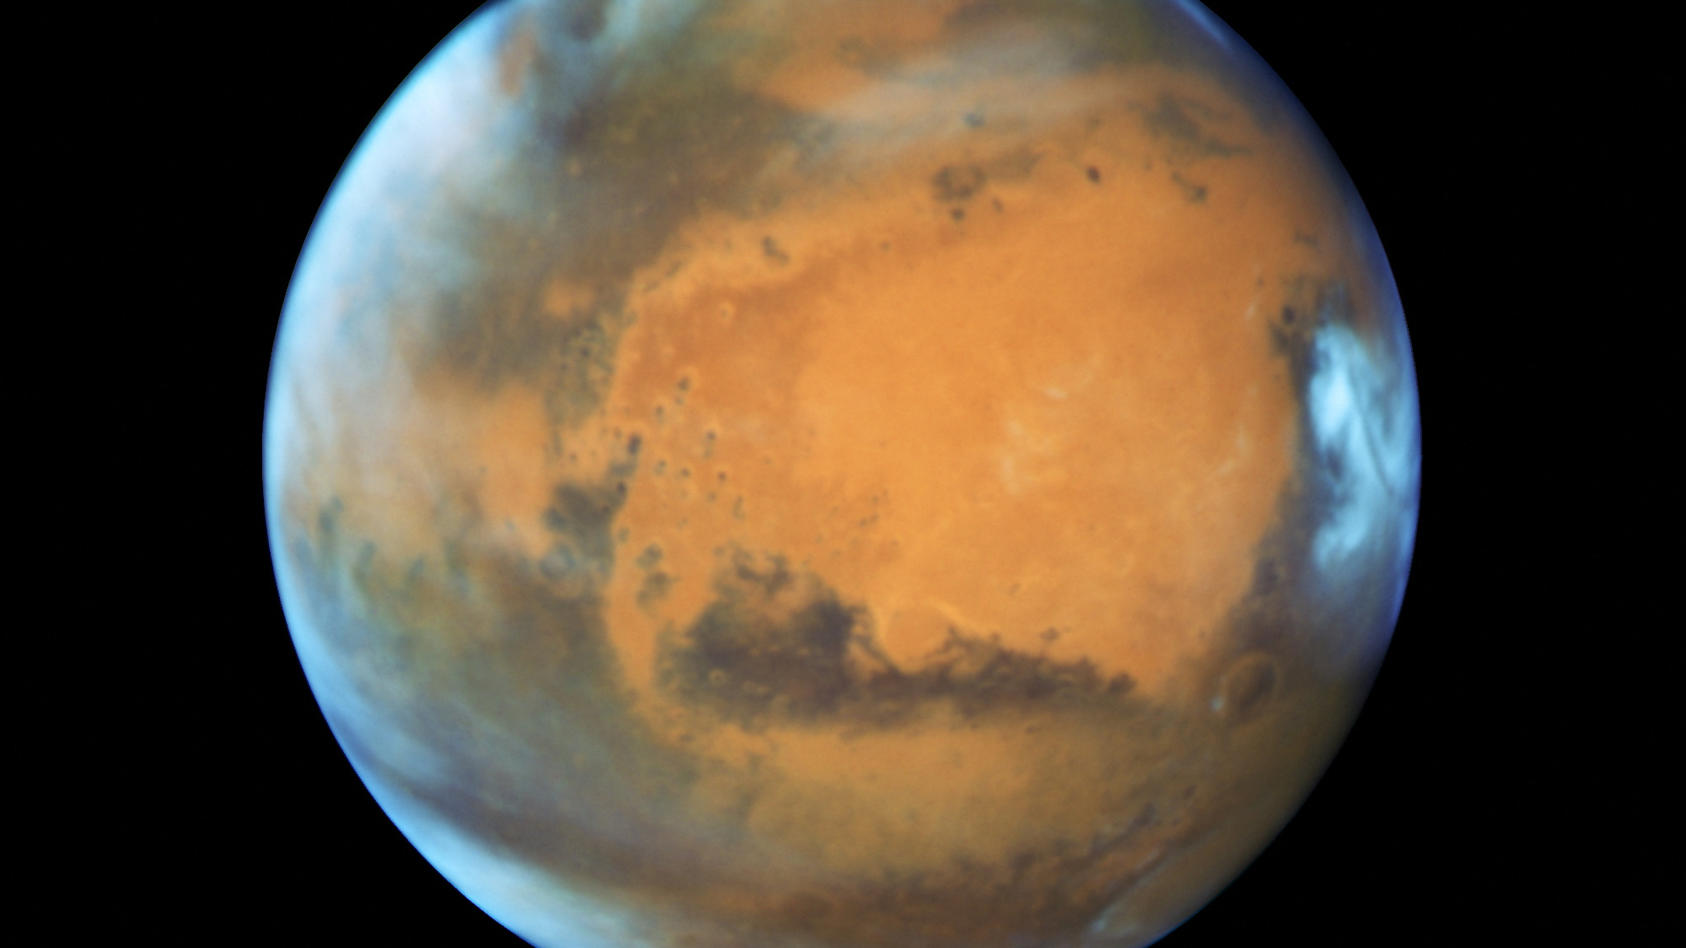 Vita sul Pianeta Rosso: La vista sul fiume suggerisce la presenza di vita su Marte